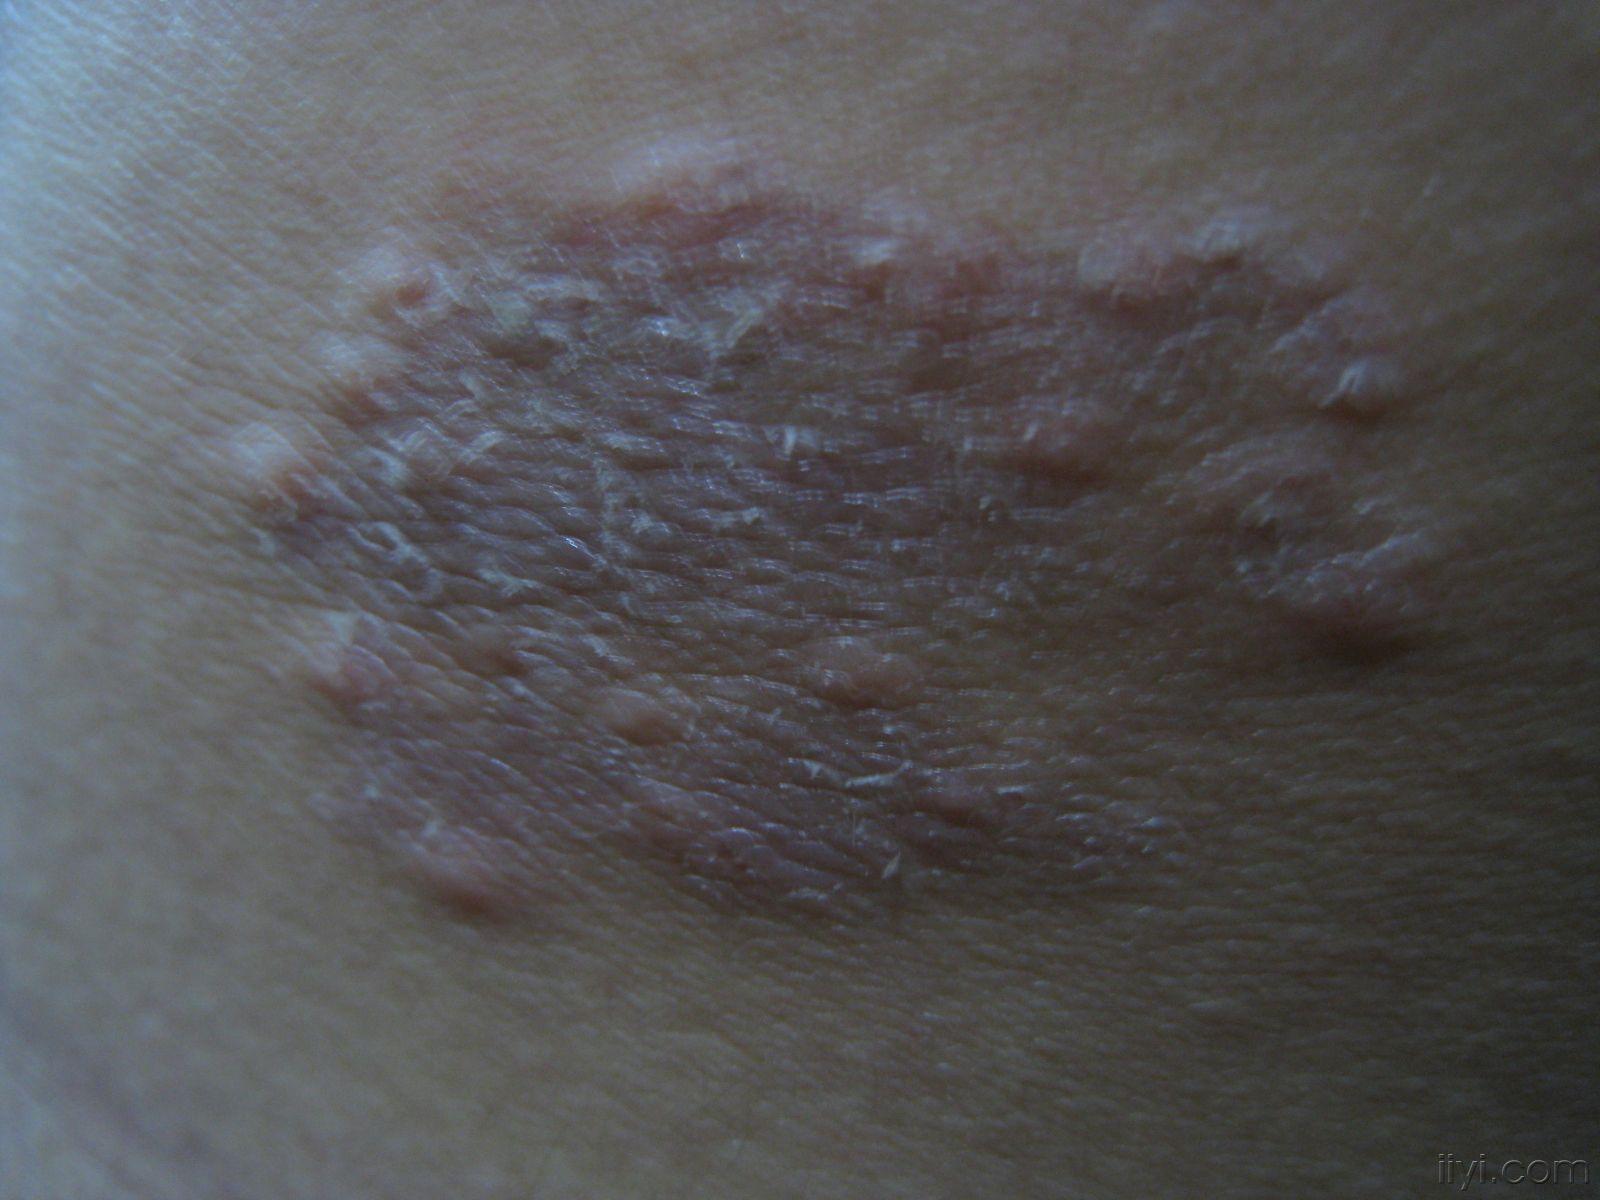 湿疹梅花斑癣图片图片